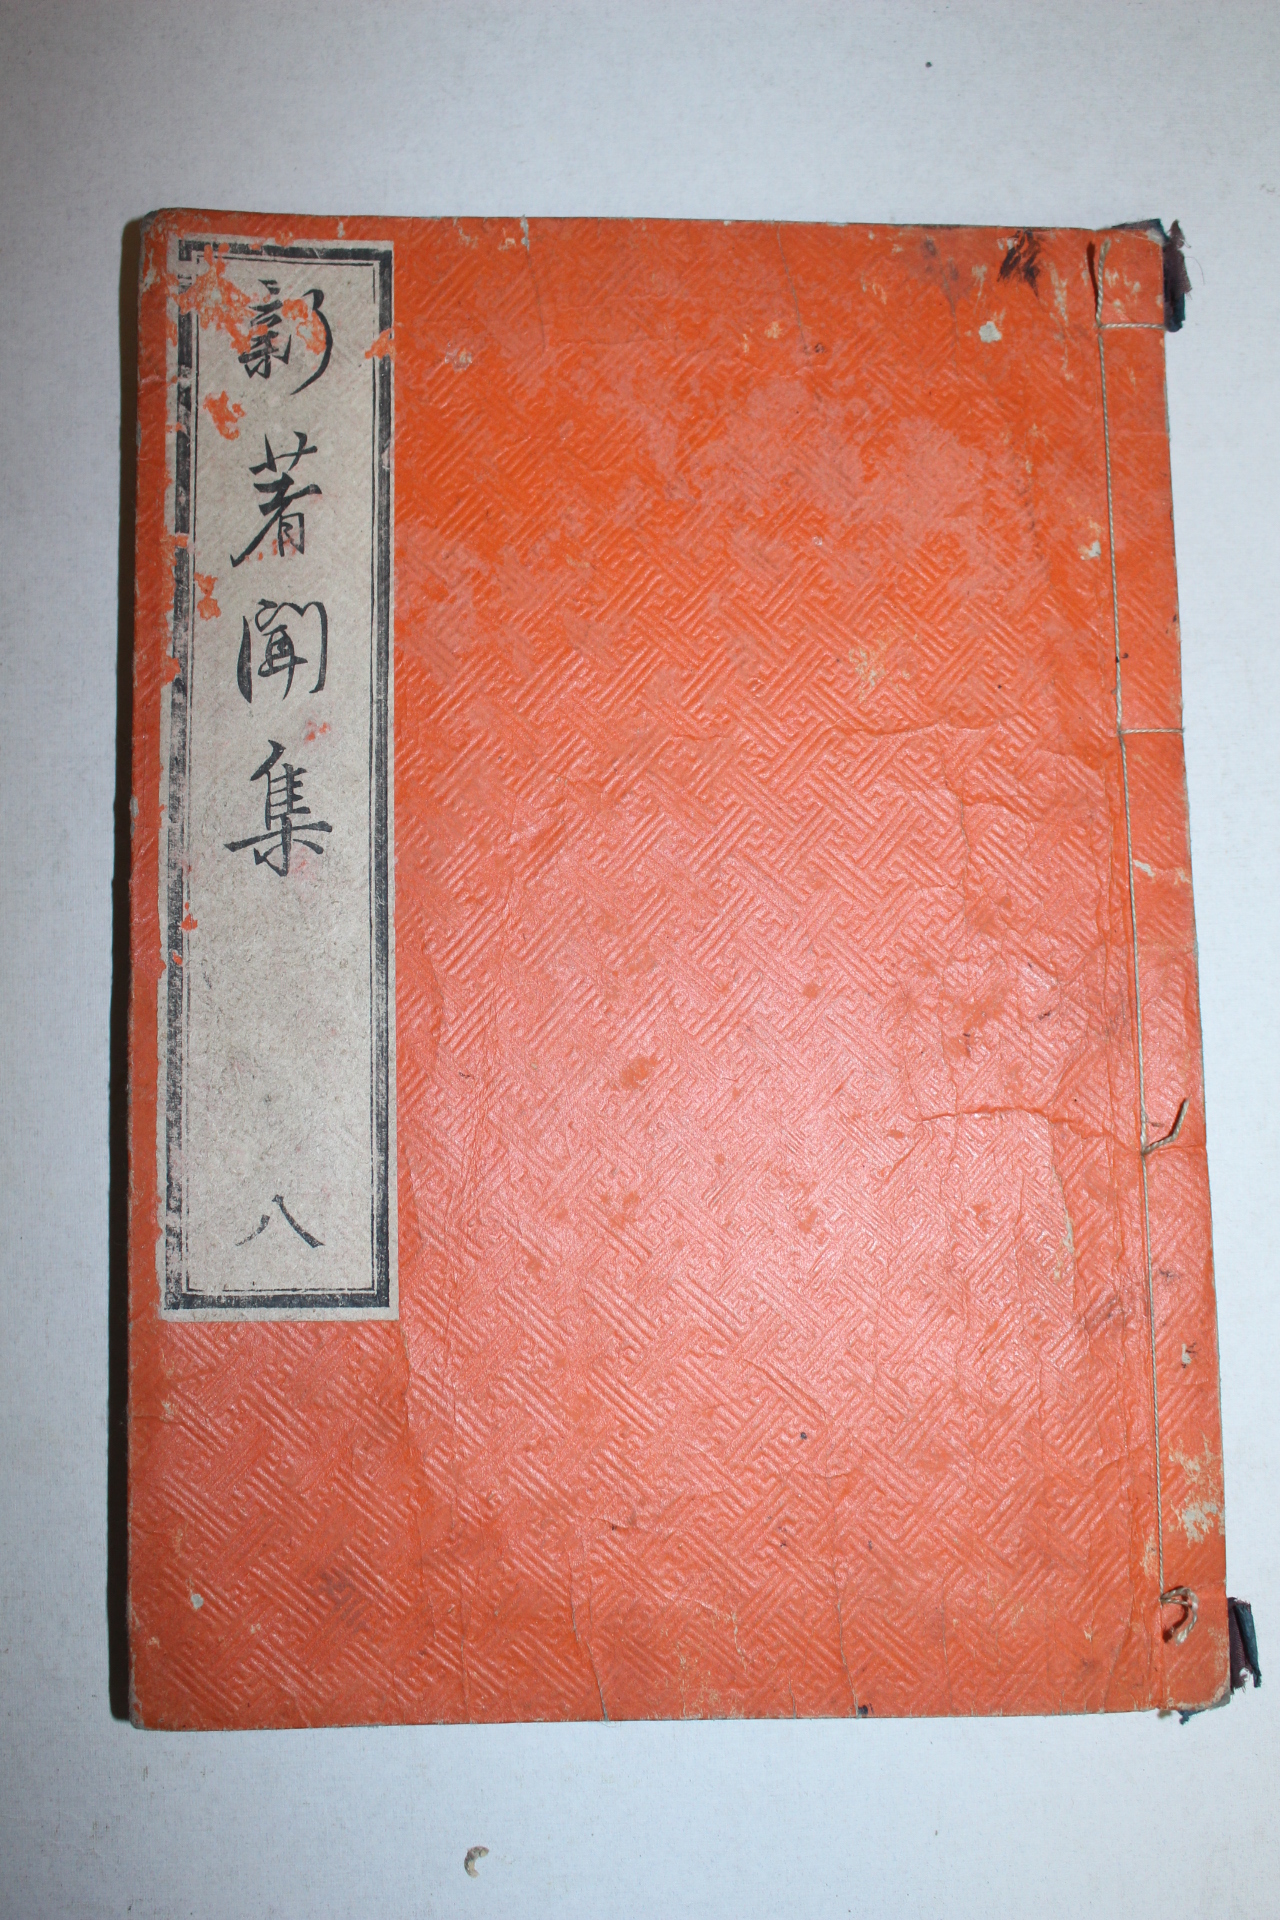 1790년(寬政2年) 일본목판본 신저문집(新著聞集) 1책